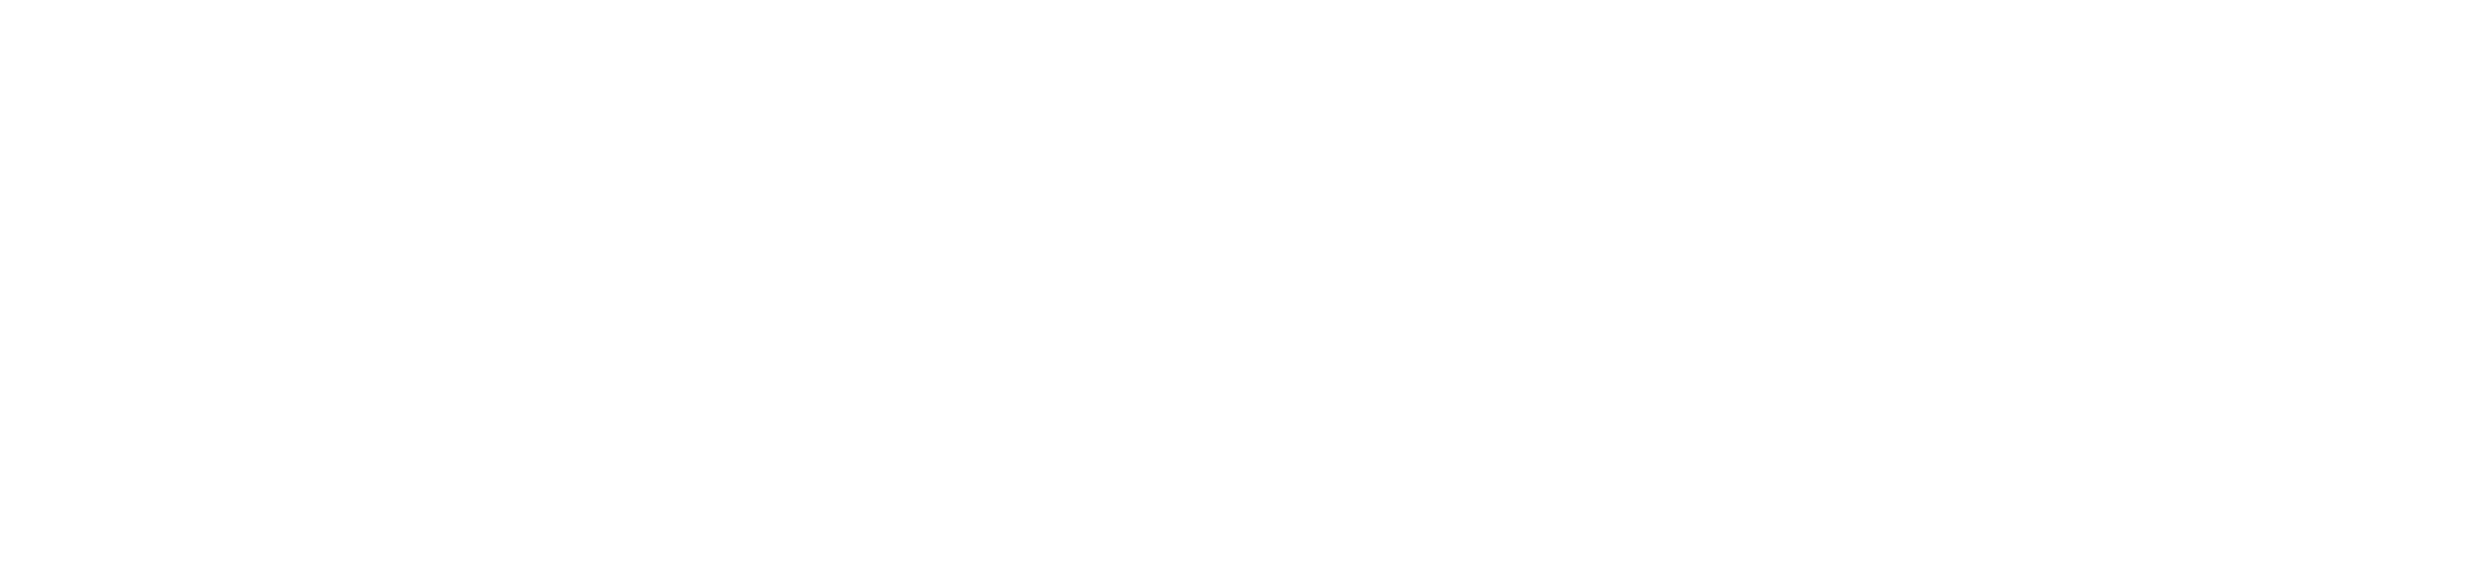 Japan Campingcar Rental Center Group